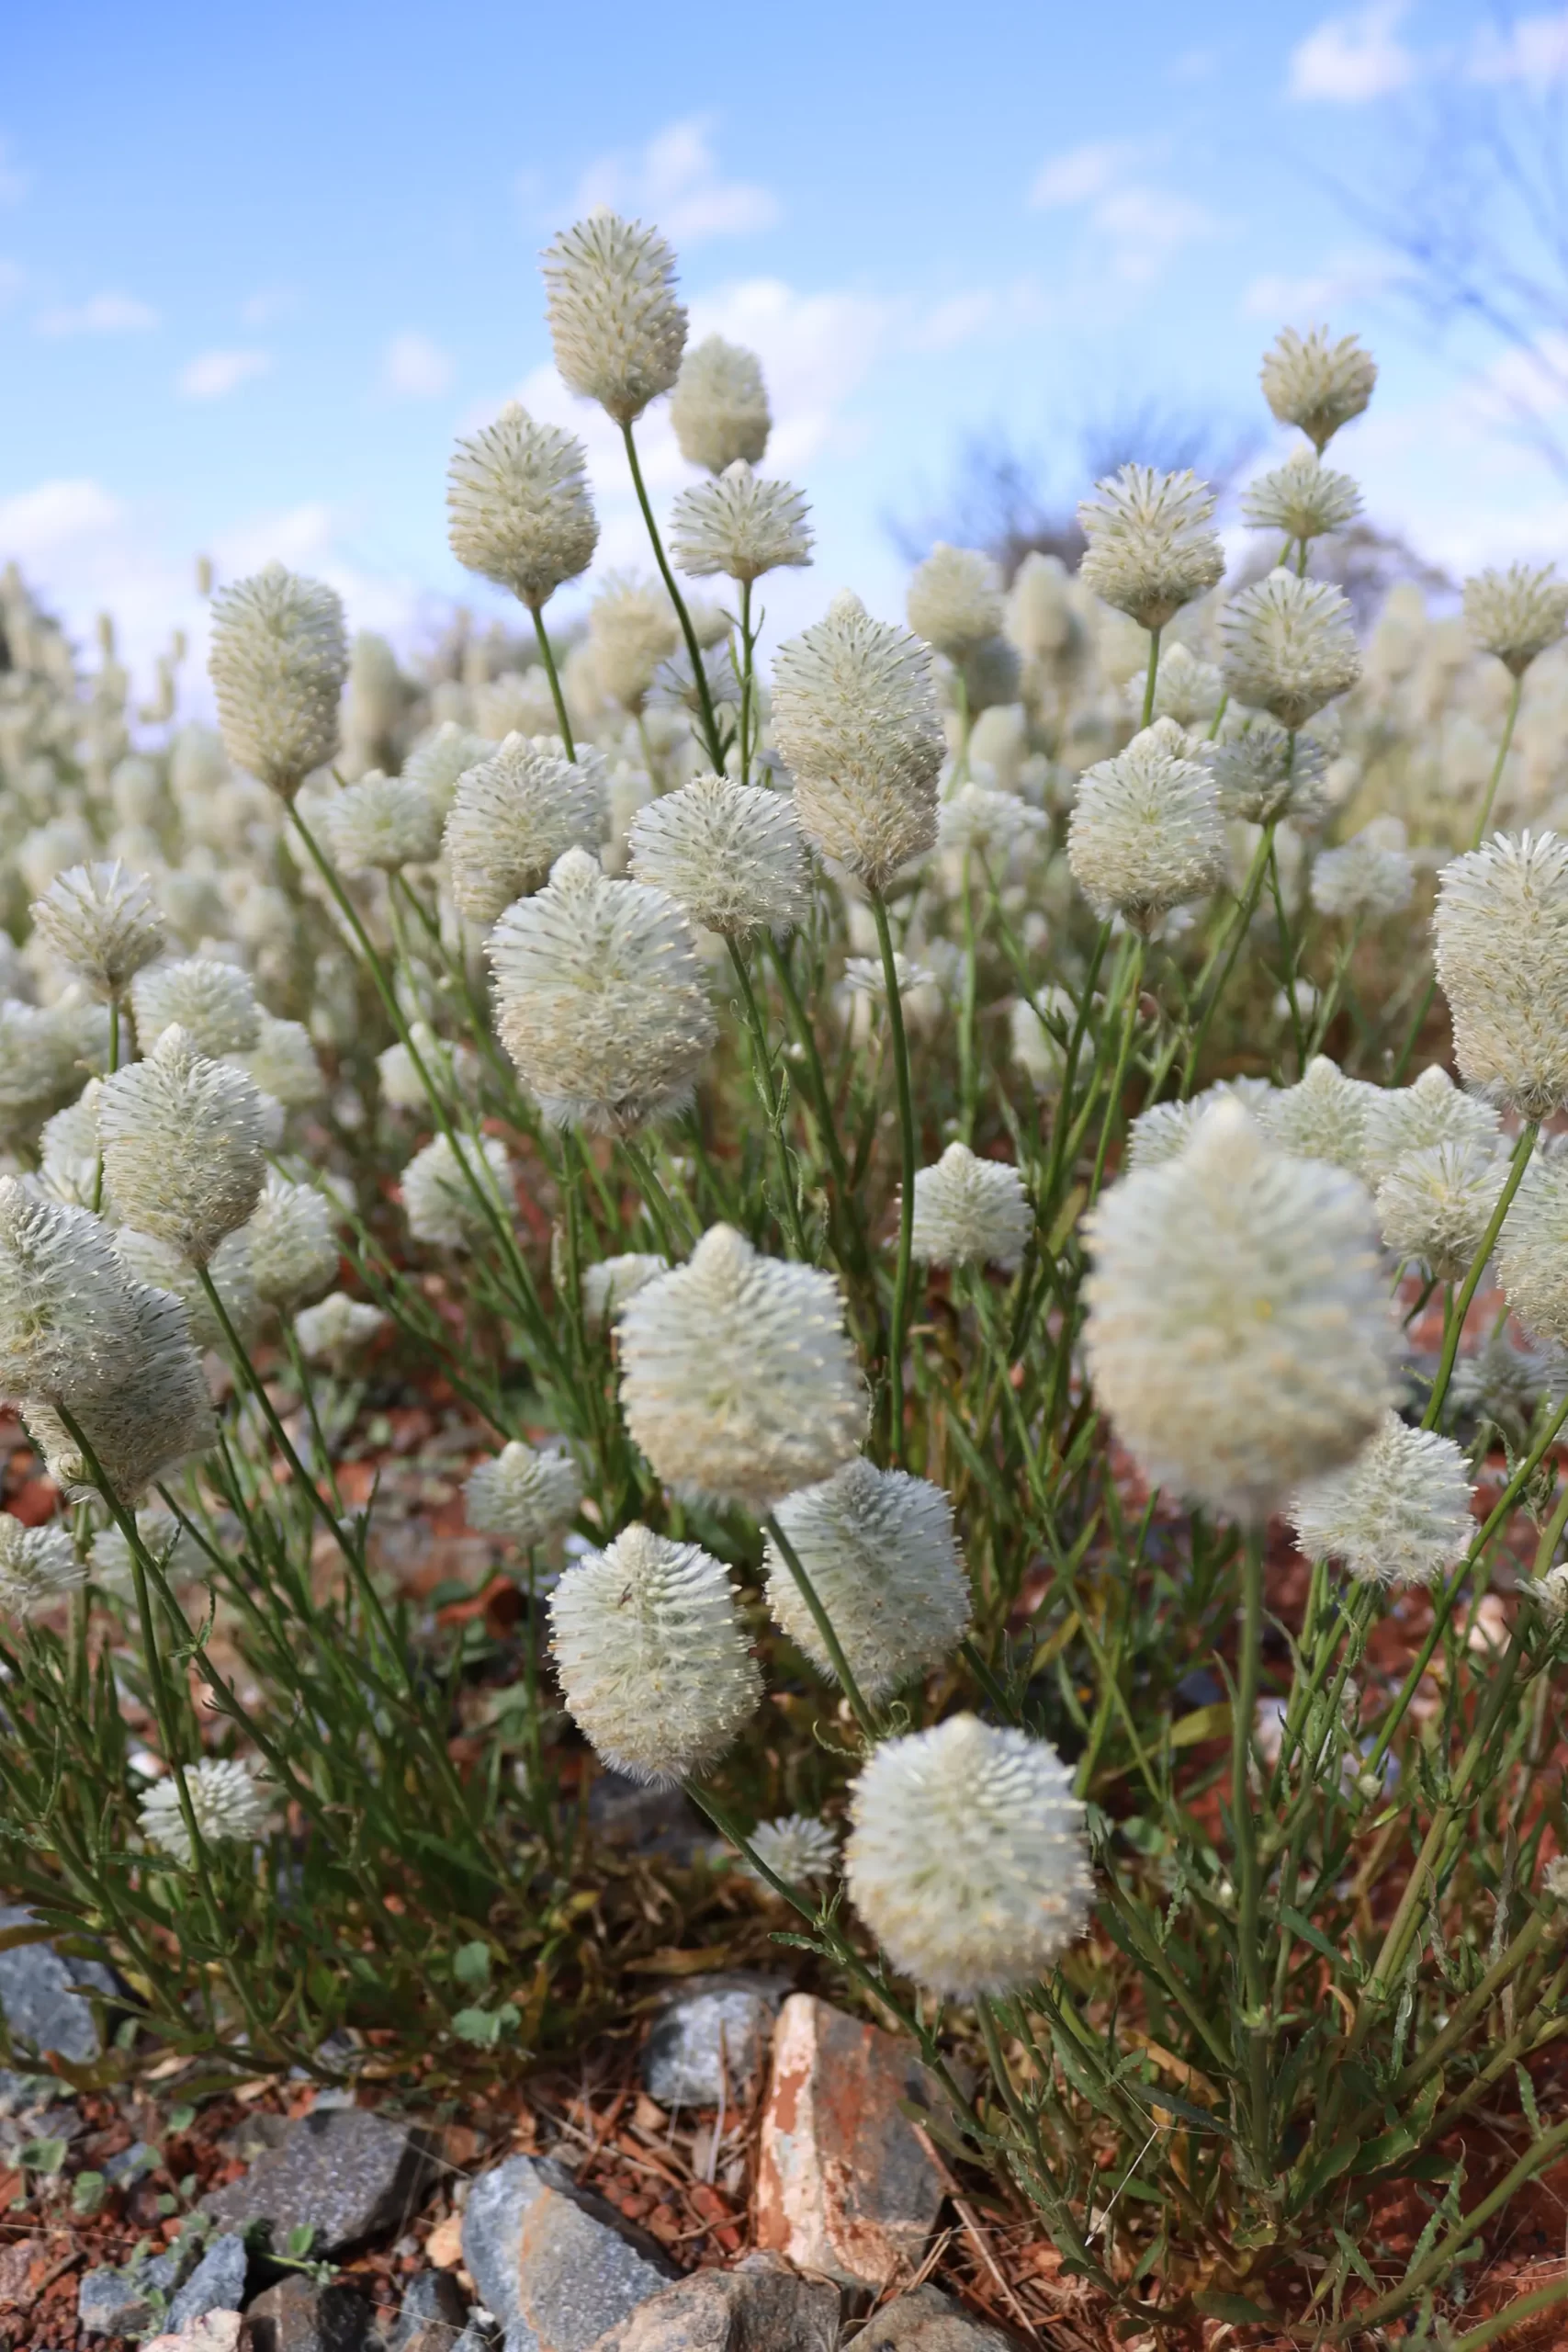 Ptilotus macrocephalus or featherheads is a perennial herb native to Australia.